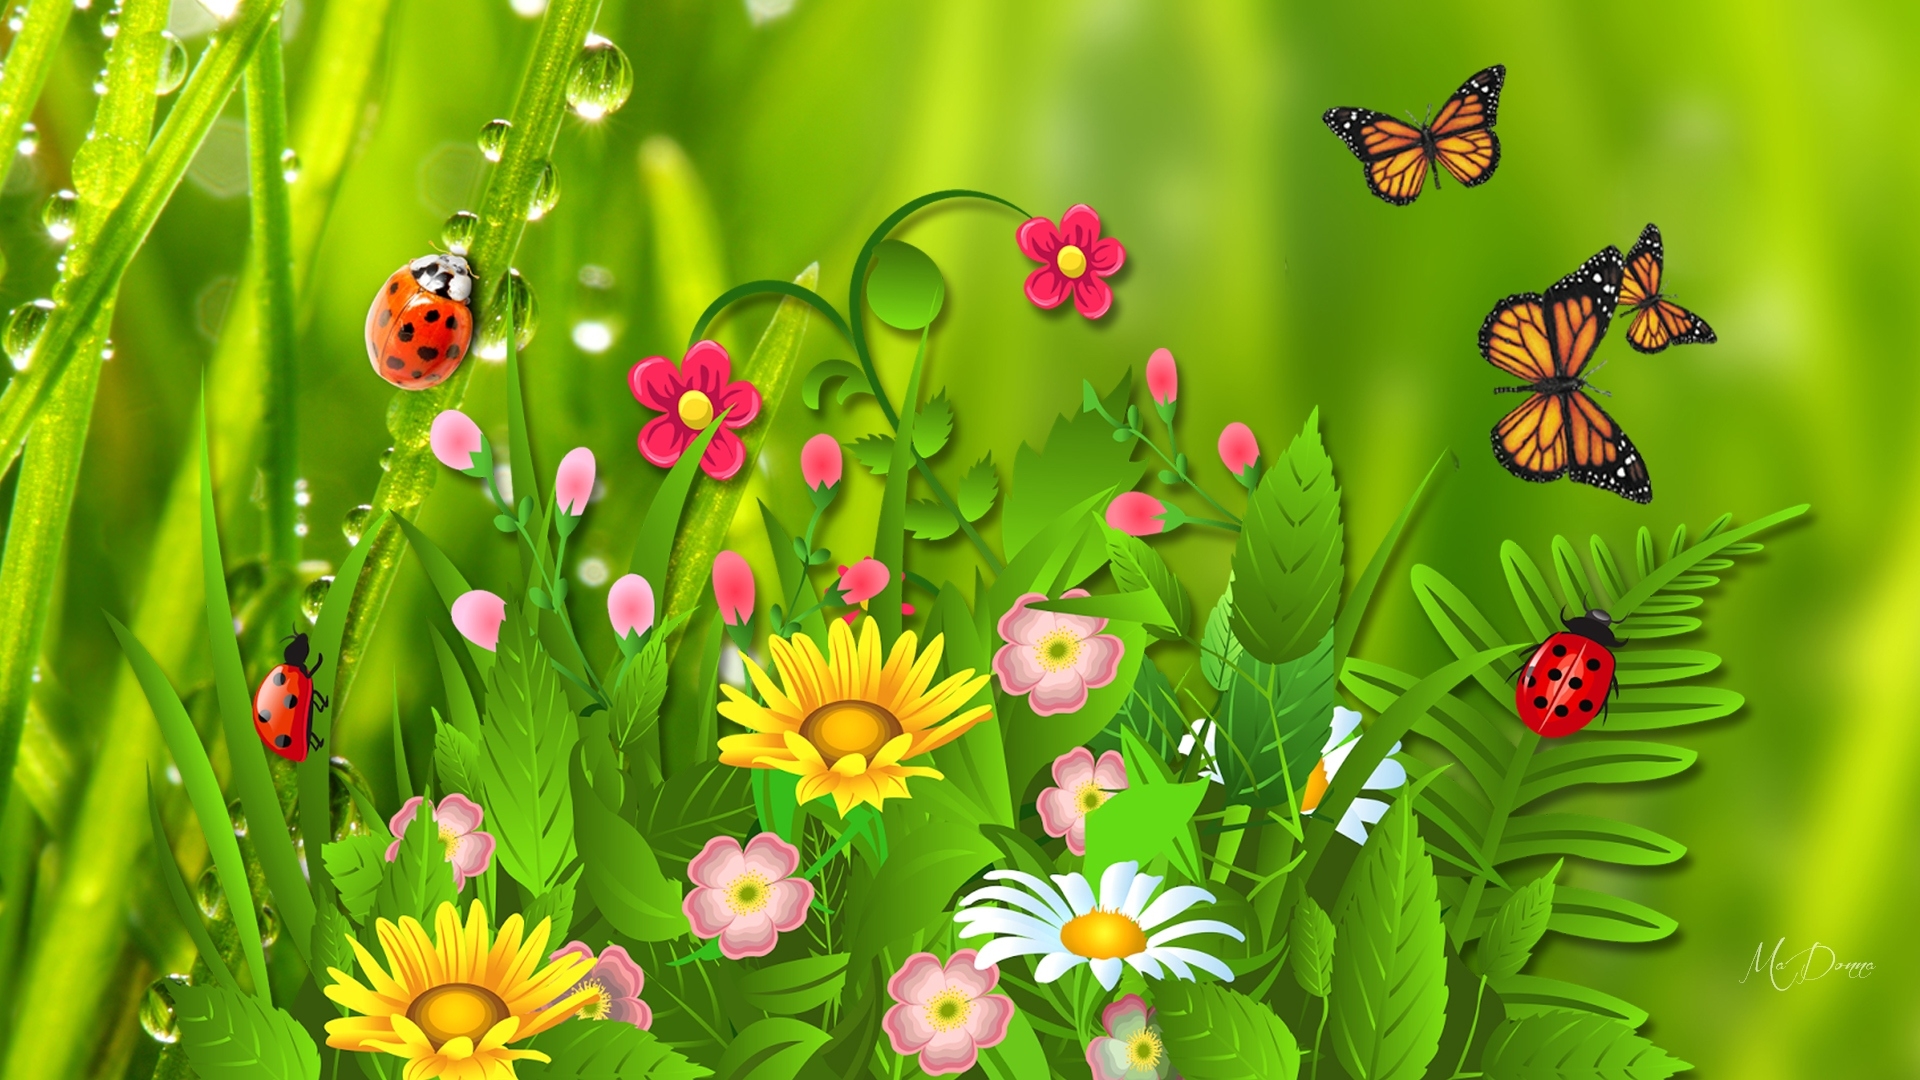 Скачать обои бесплатно Природа, Трава, Цветок, Бабочка, Божья Коровка, Весна, Художественные картинка на рабочий стол ПК